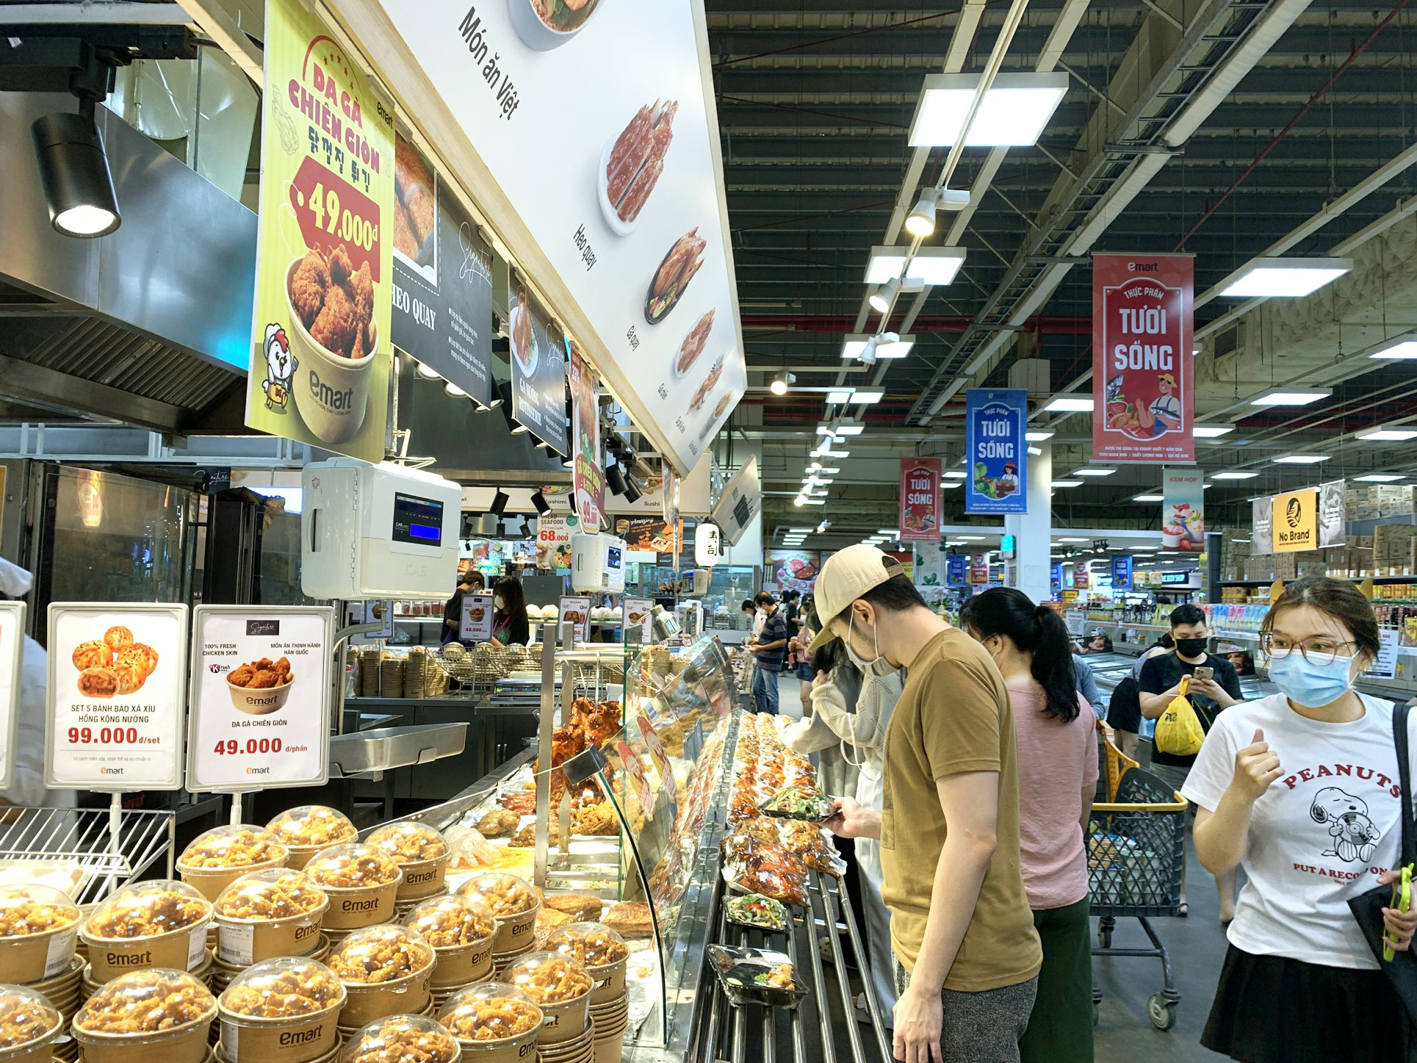 Tập đoàn THACO đặt mục tiêu mở thêm 20 siêu thị Emart trong 5 năm tới, doanh thu đến năm 2026 dự kiến đạt 1 tỉ USD (ảnh chụp tại Emart Phan Văn Trị, quận Gò Vấp, TPHCM) - ẢNH: NGUYỄN CẨM